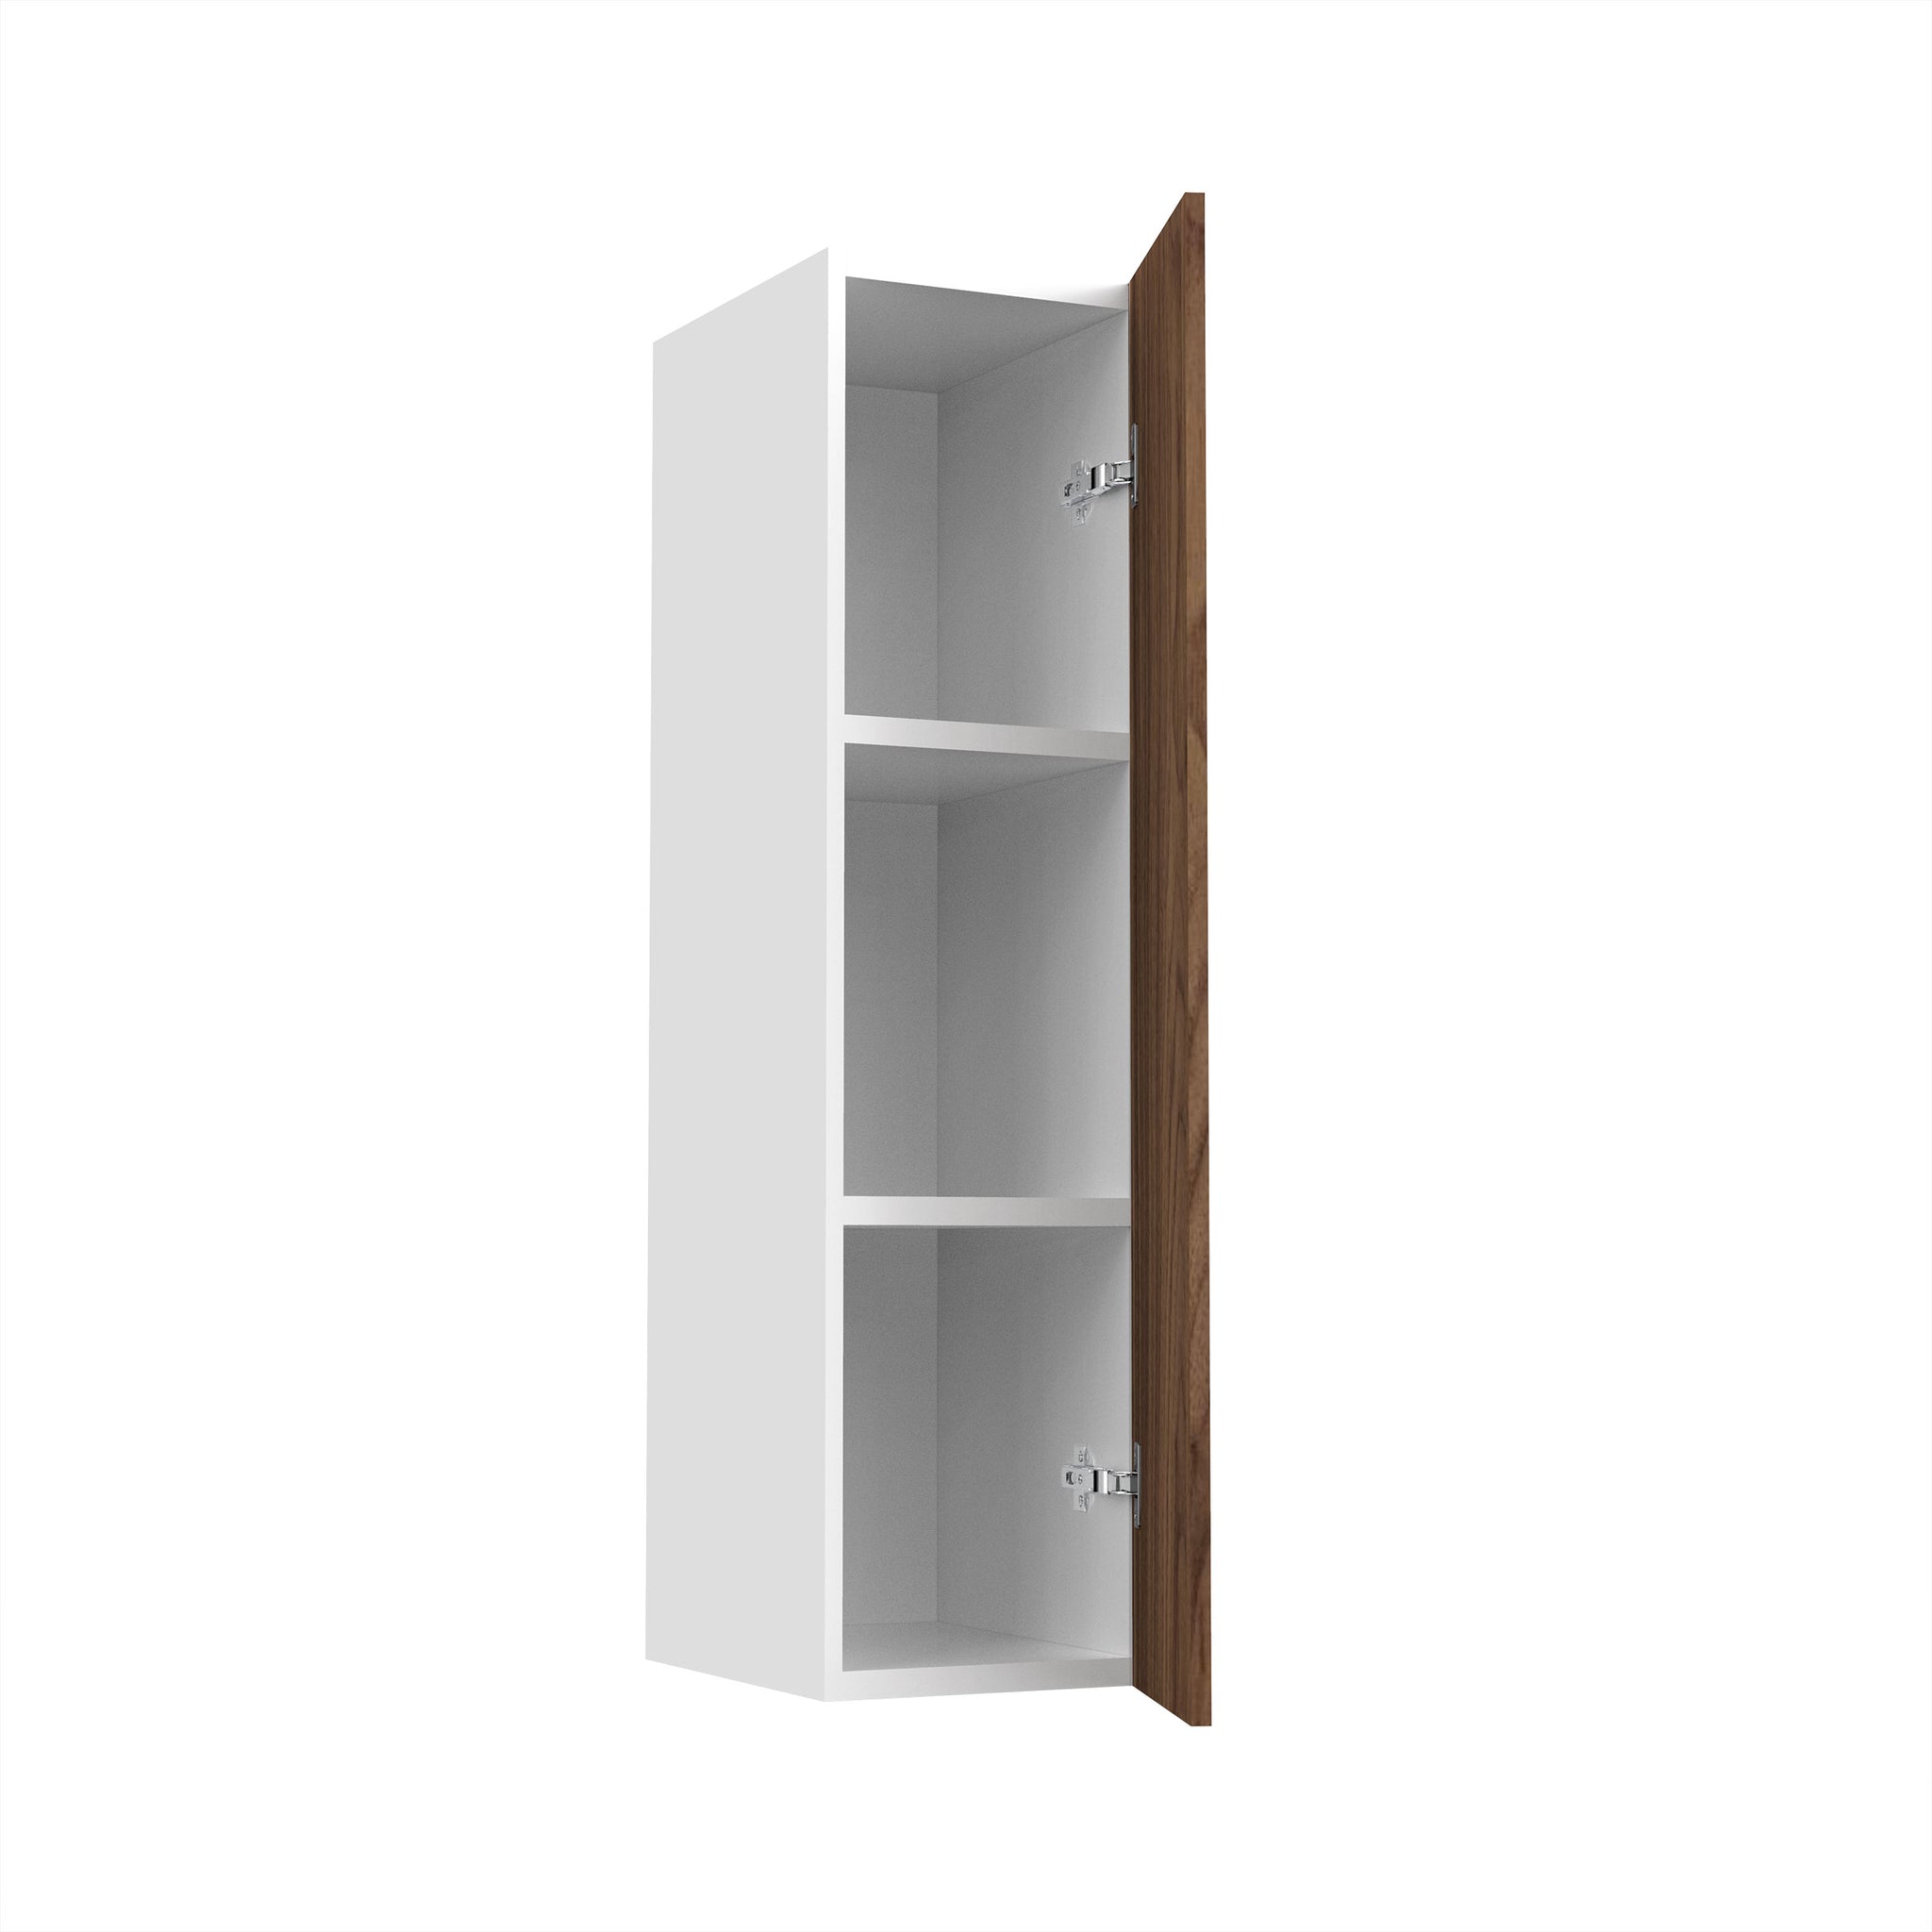 RTA - Walnut - Single Door Wall Cabinets | 9"W x 36"H x 12"D